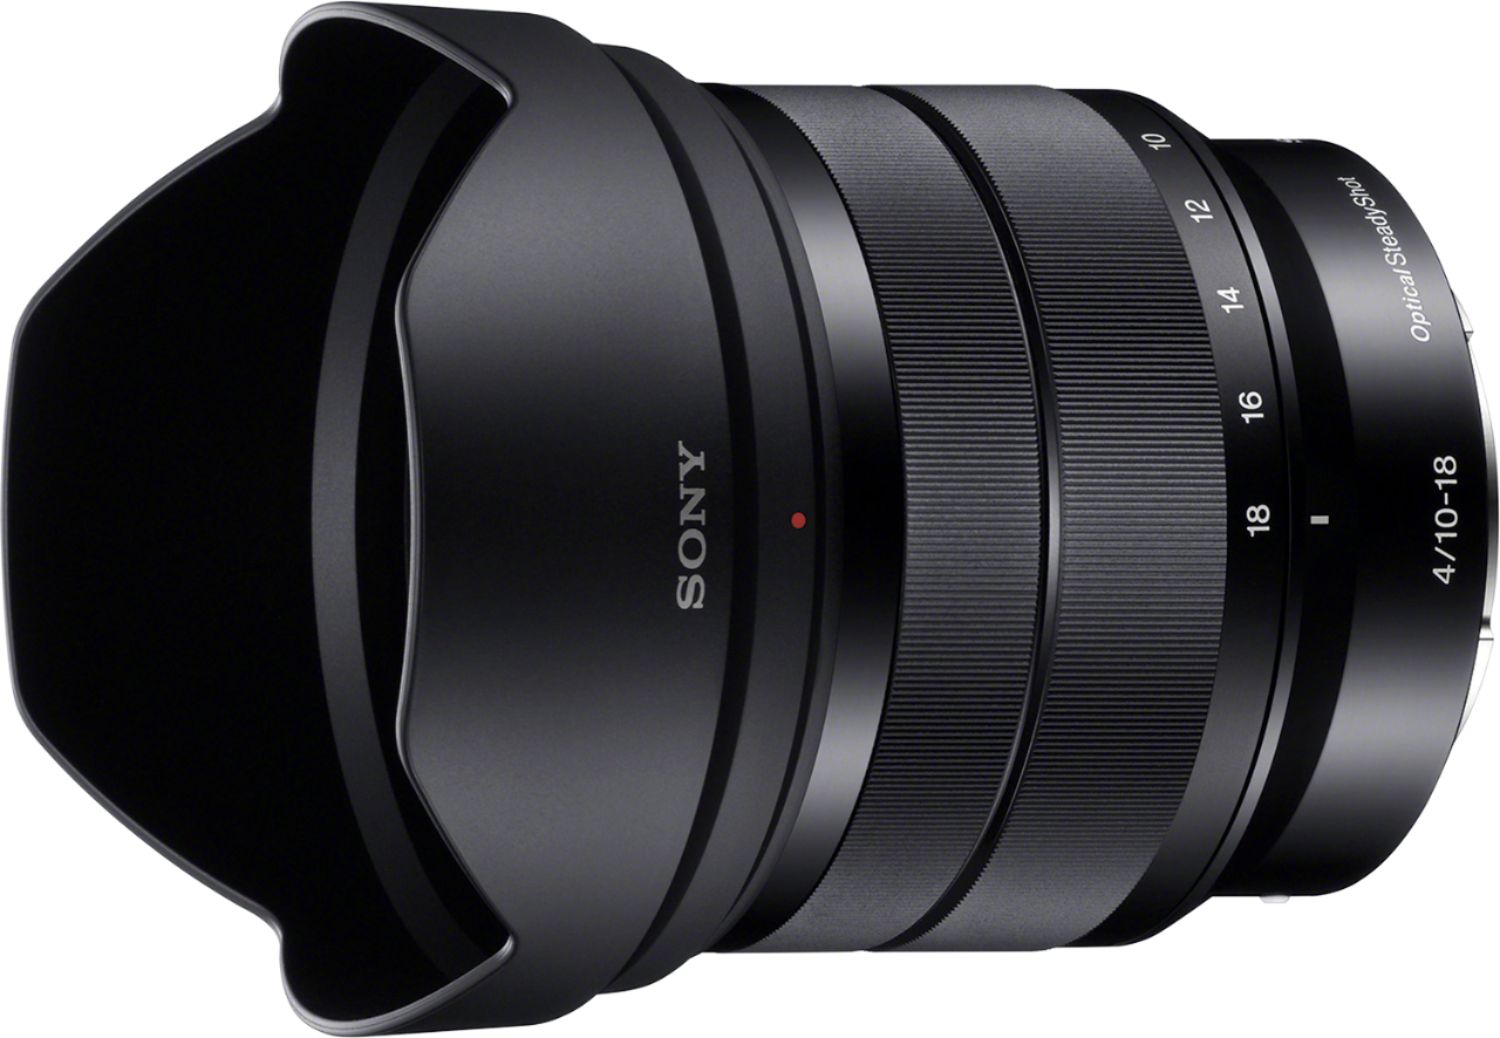 Left View: Sigma - 35mm f/1.4 DG HSM Art Standard Lens for Select Sony Digital Cameras - Black